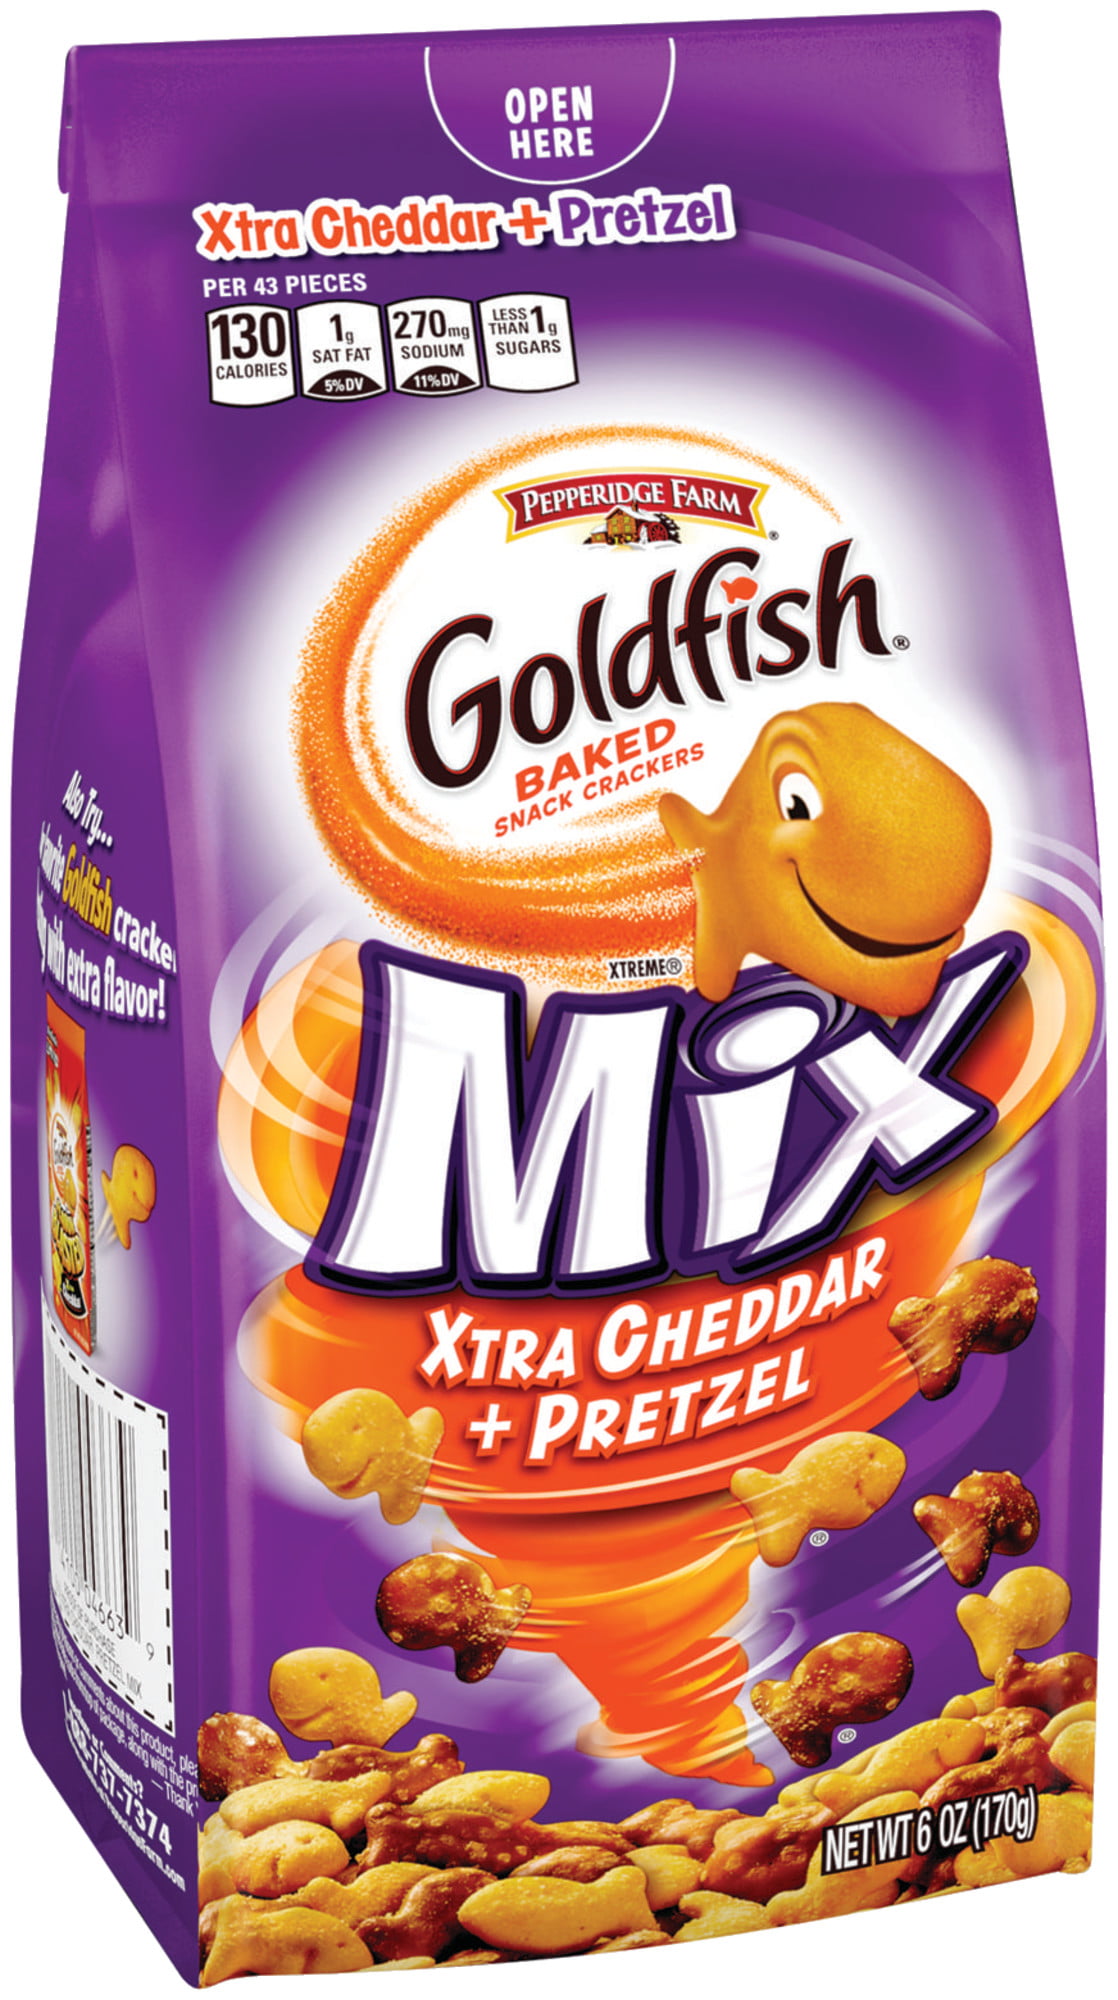 Pepperidge Farm Goldfish Mix Xtra Cheddar + Pretzel Crackers, 6 oz. Bag ...